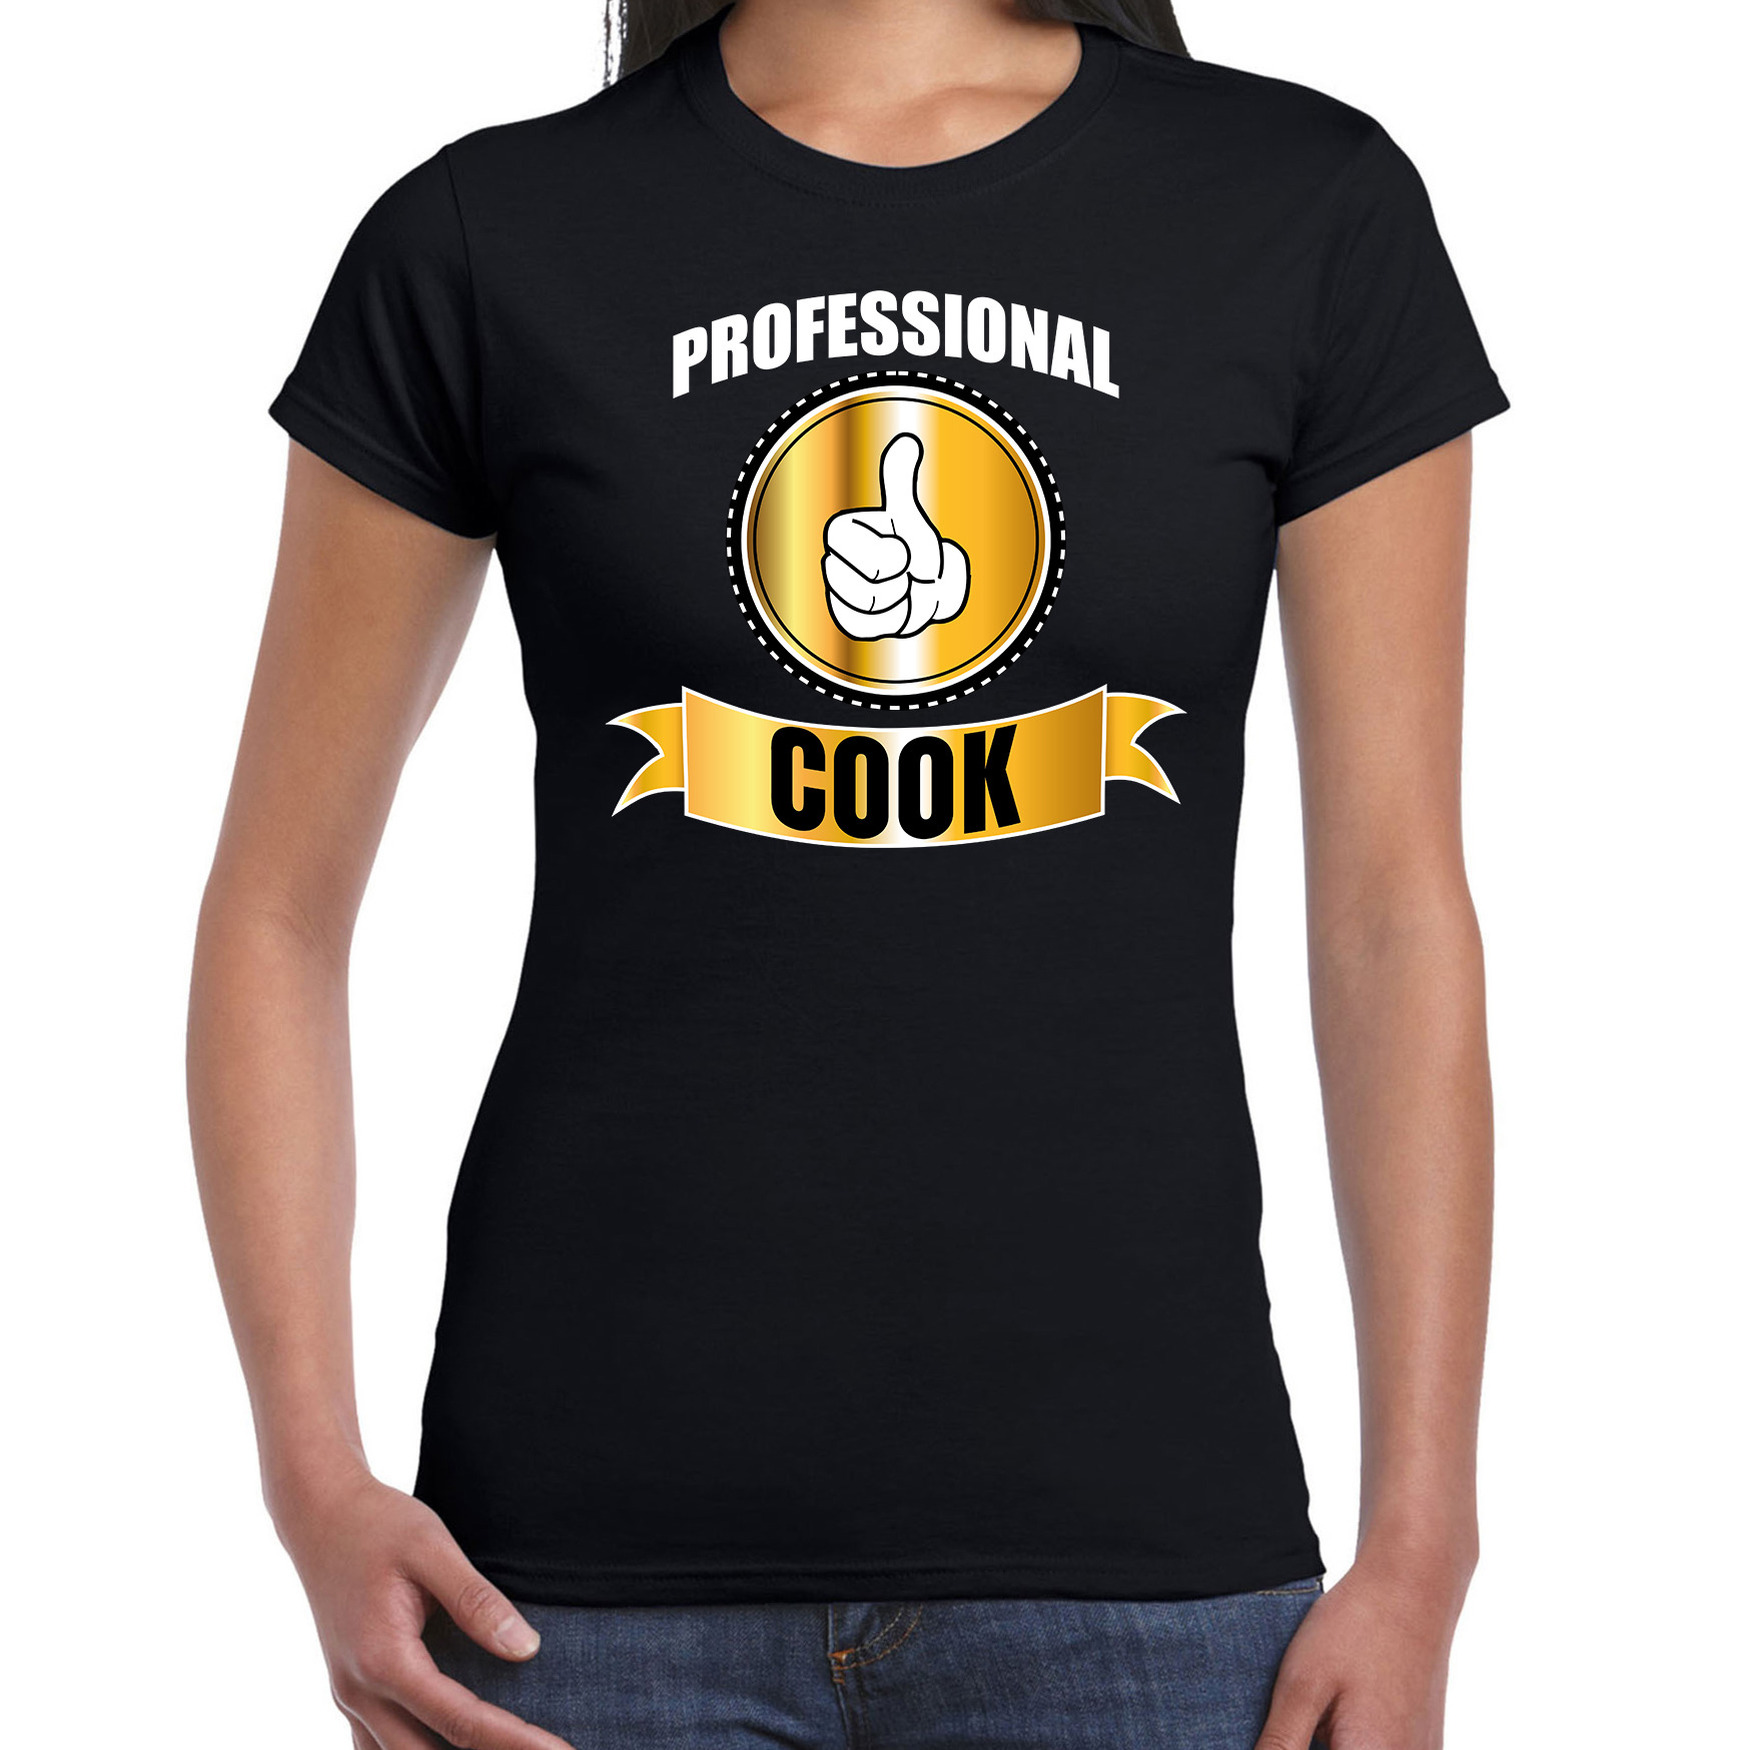 Professional cook-professionele kok t-shirt zwart dames Kok cadeau shirt